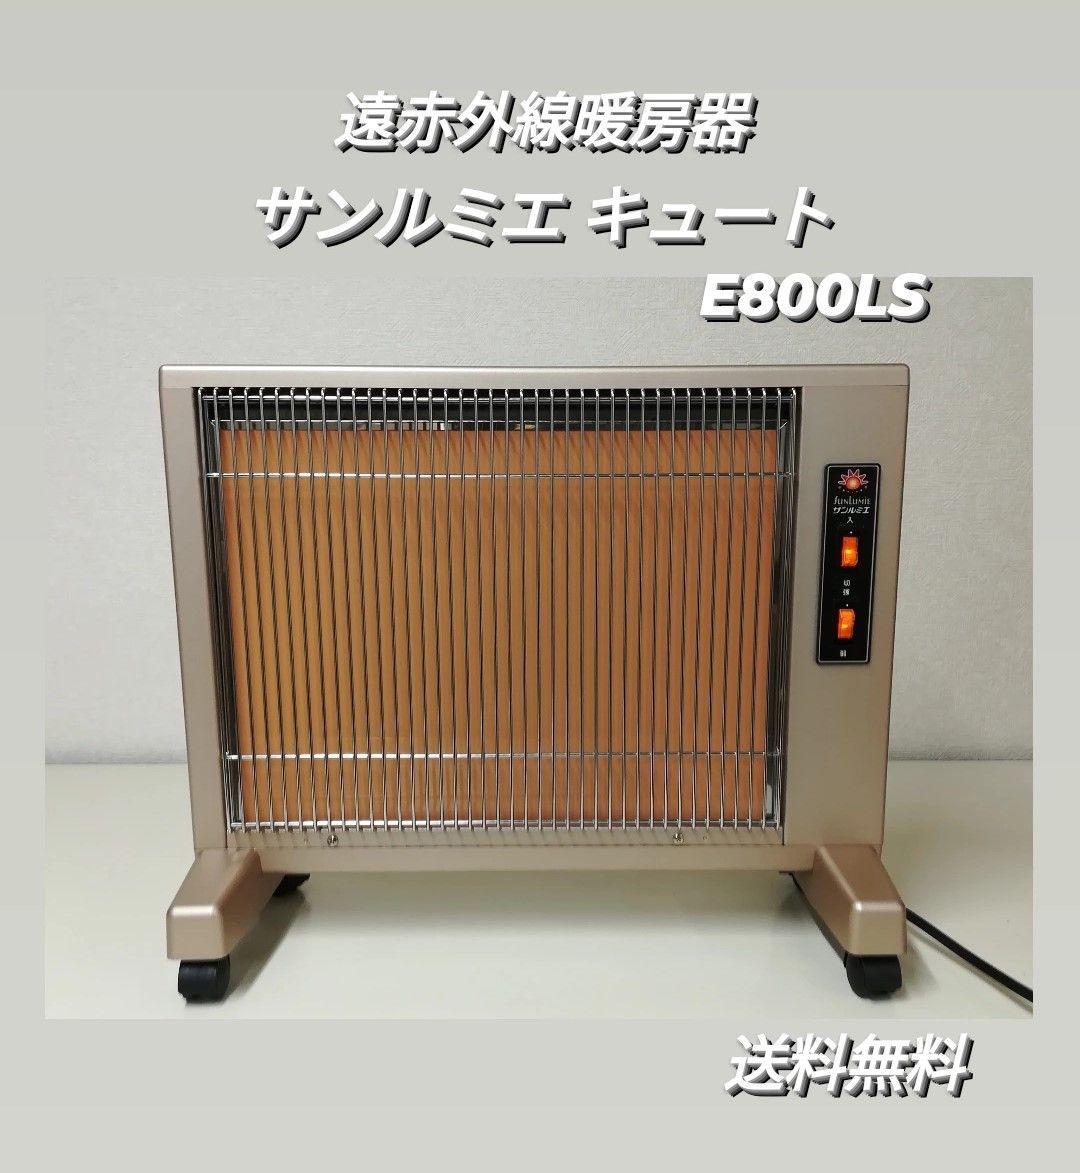 サンルミエ キュート E800LS 遠赤外線暖房器 日本製 日本遠赤外線株式